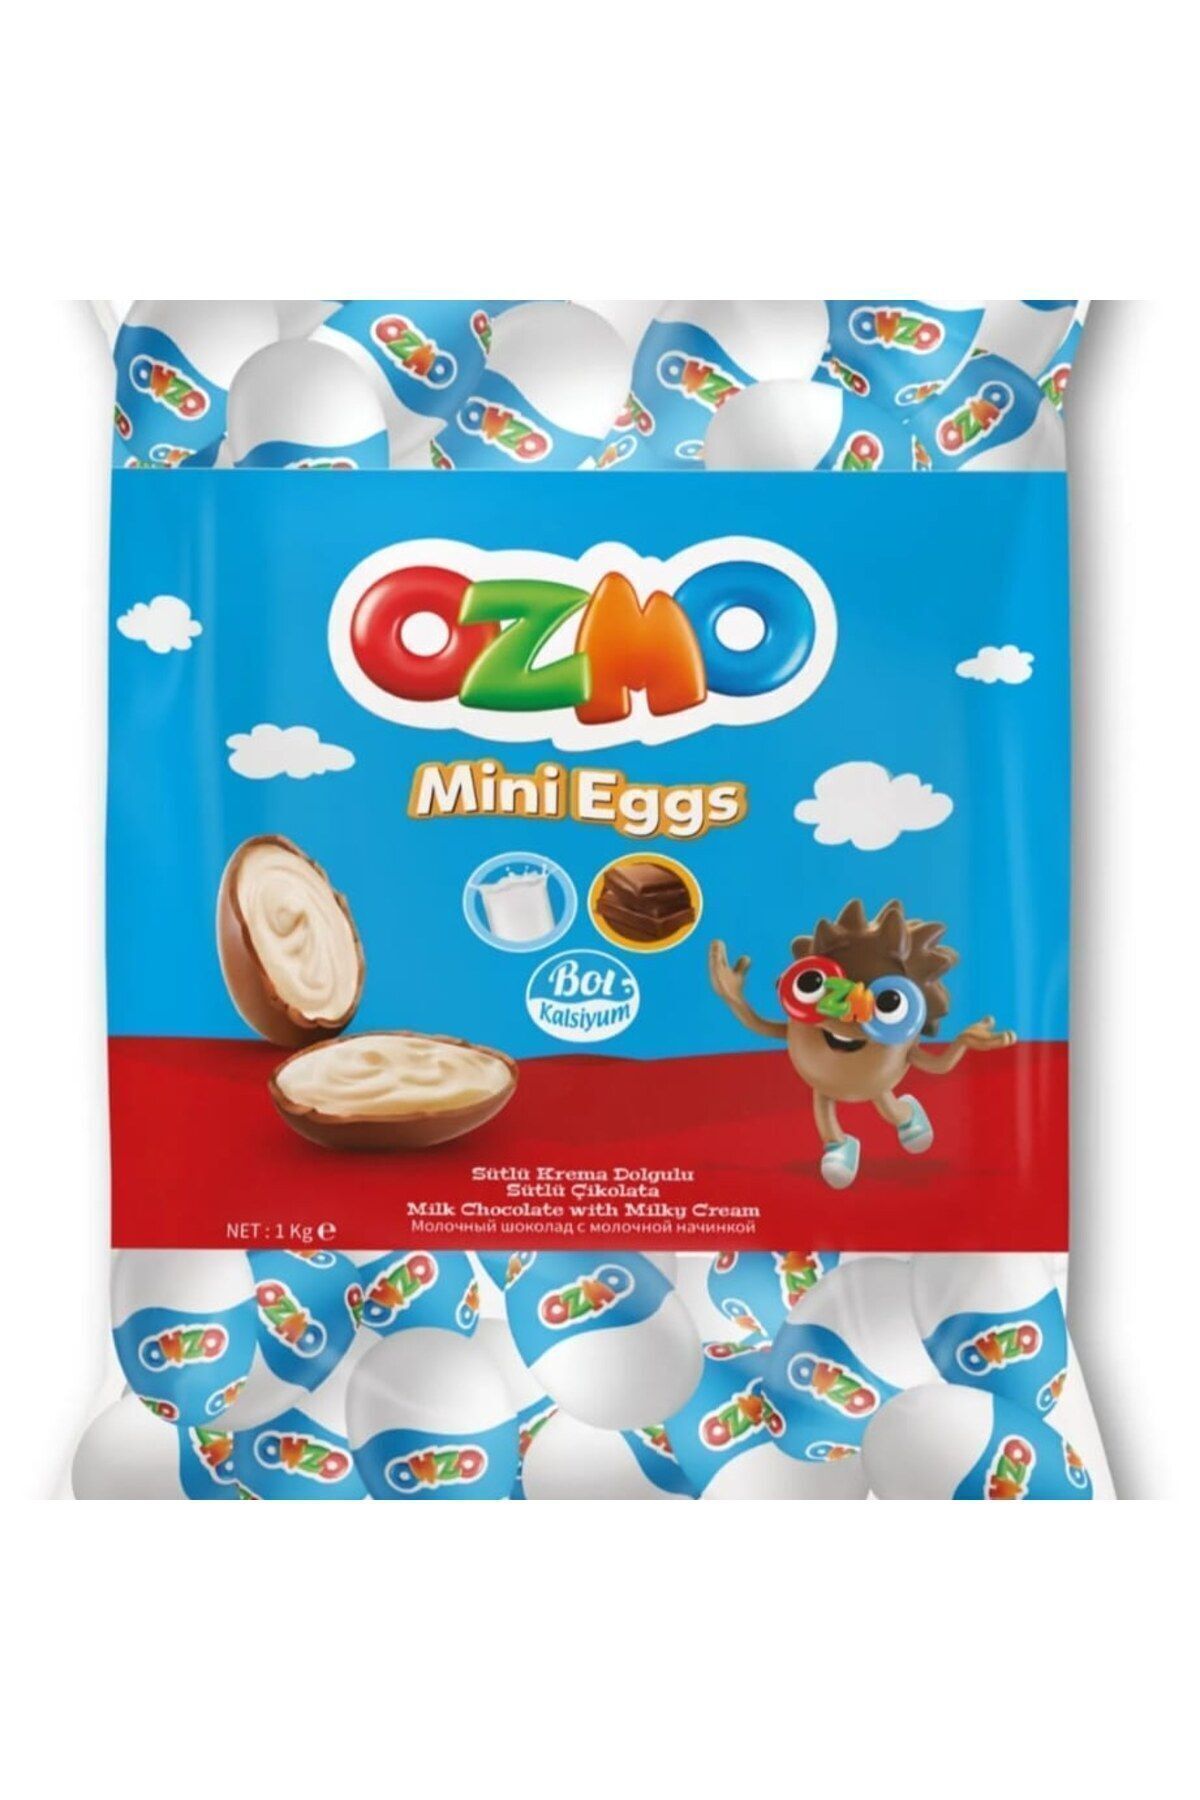 Şölen 500 gram Ozmo Mini eggs yumurta